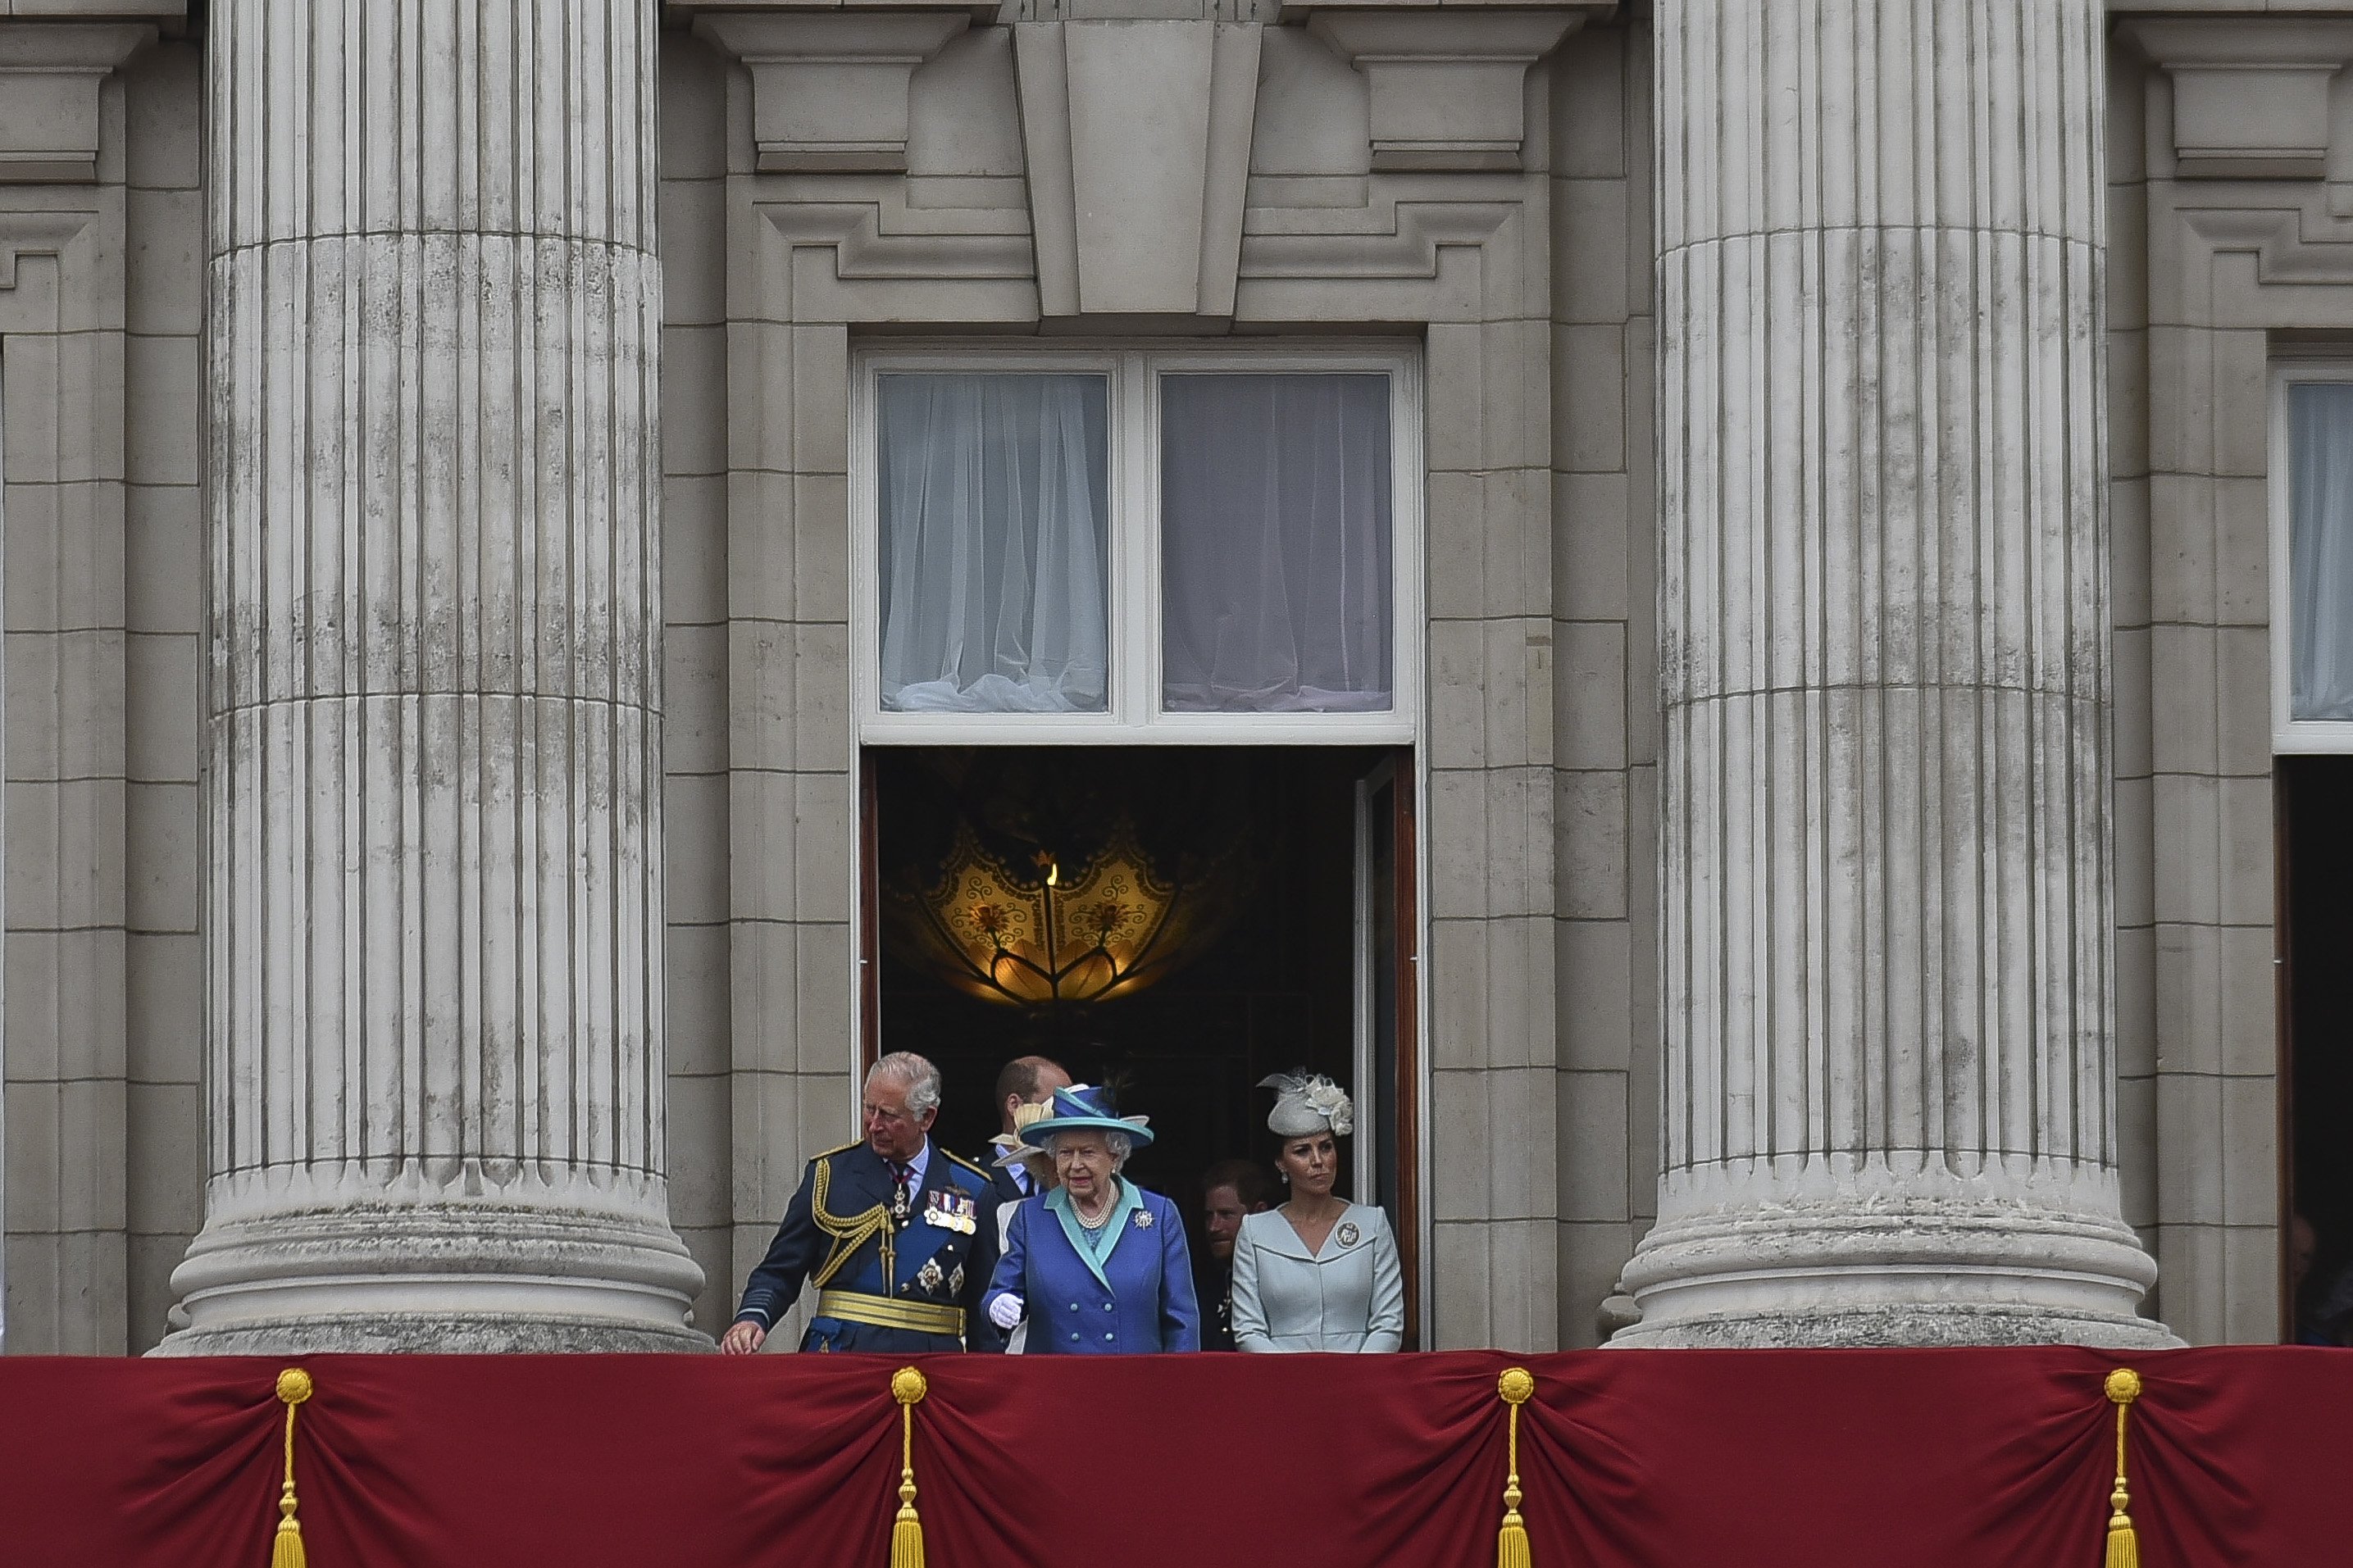 La reine Elizabeth II photographiée arrivant avec d'autres membres de la famille royale sur le balcon du palais de Buckingham pour assister à un défilé aérien militaire marquant le centenaire de la Royal Air Force (RAF), le 10 juillet 2018 à Londres, en Angleterre. | Source : Getty Images